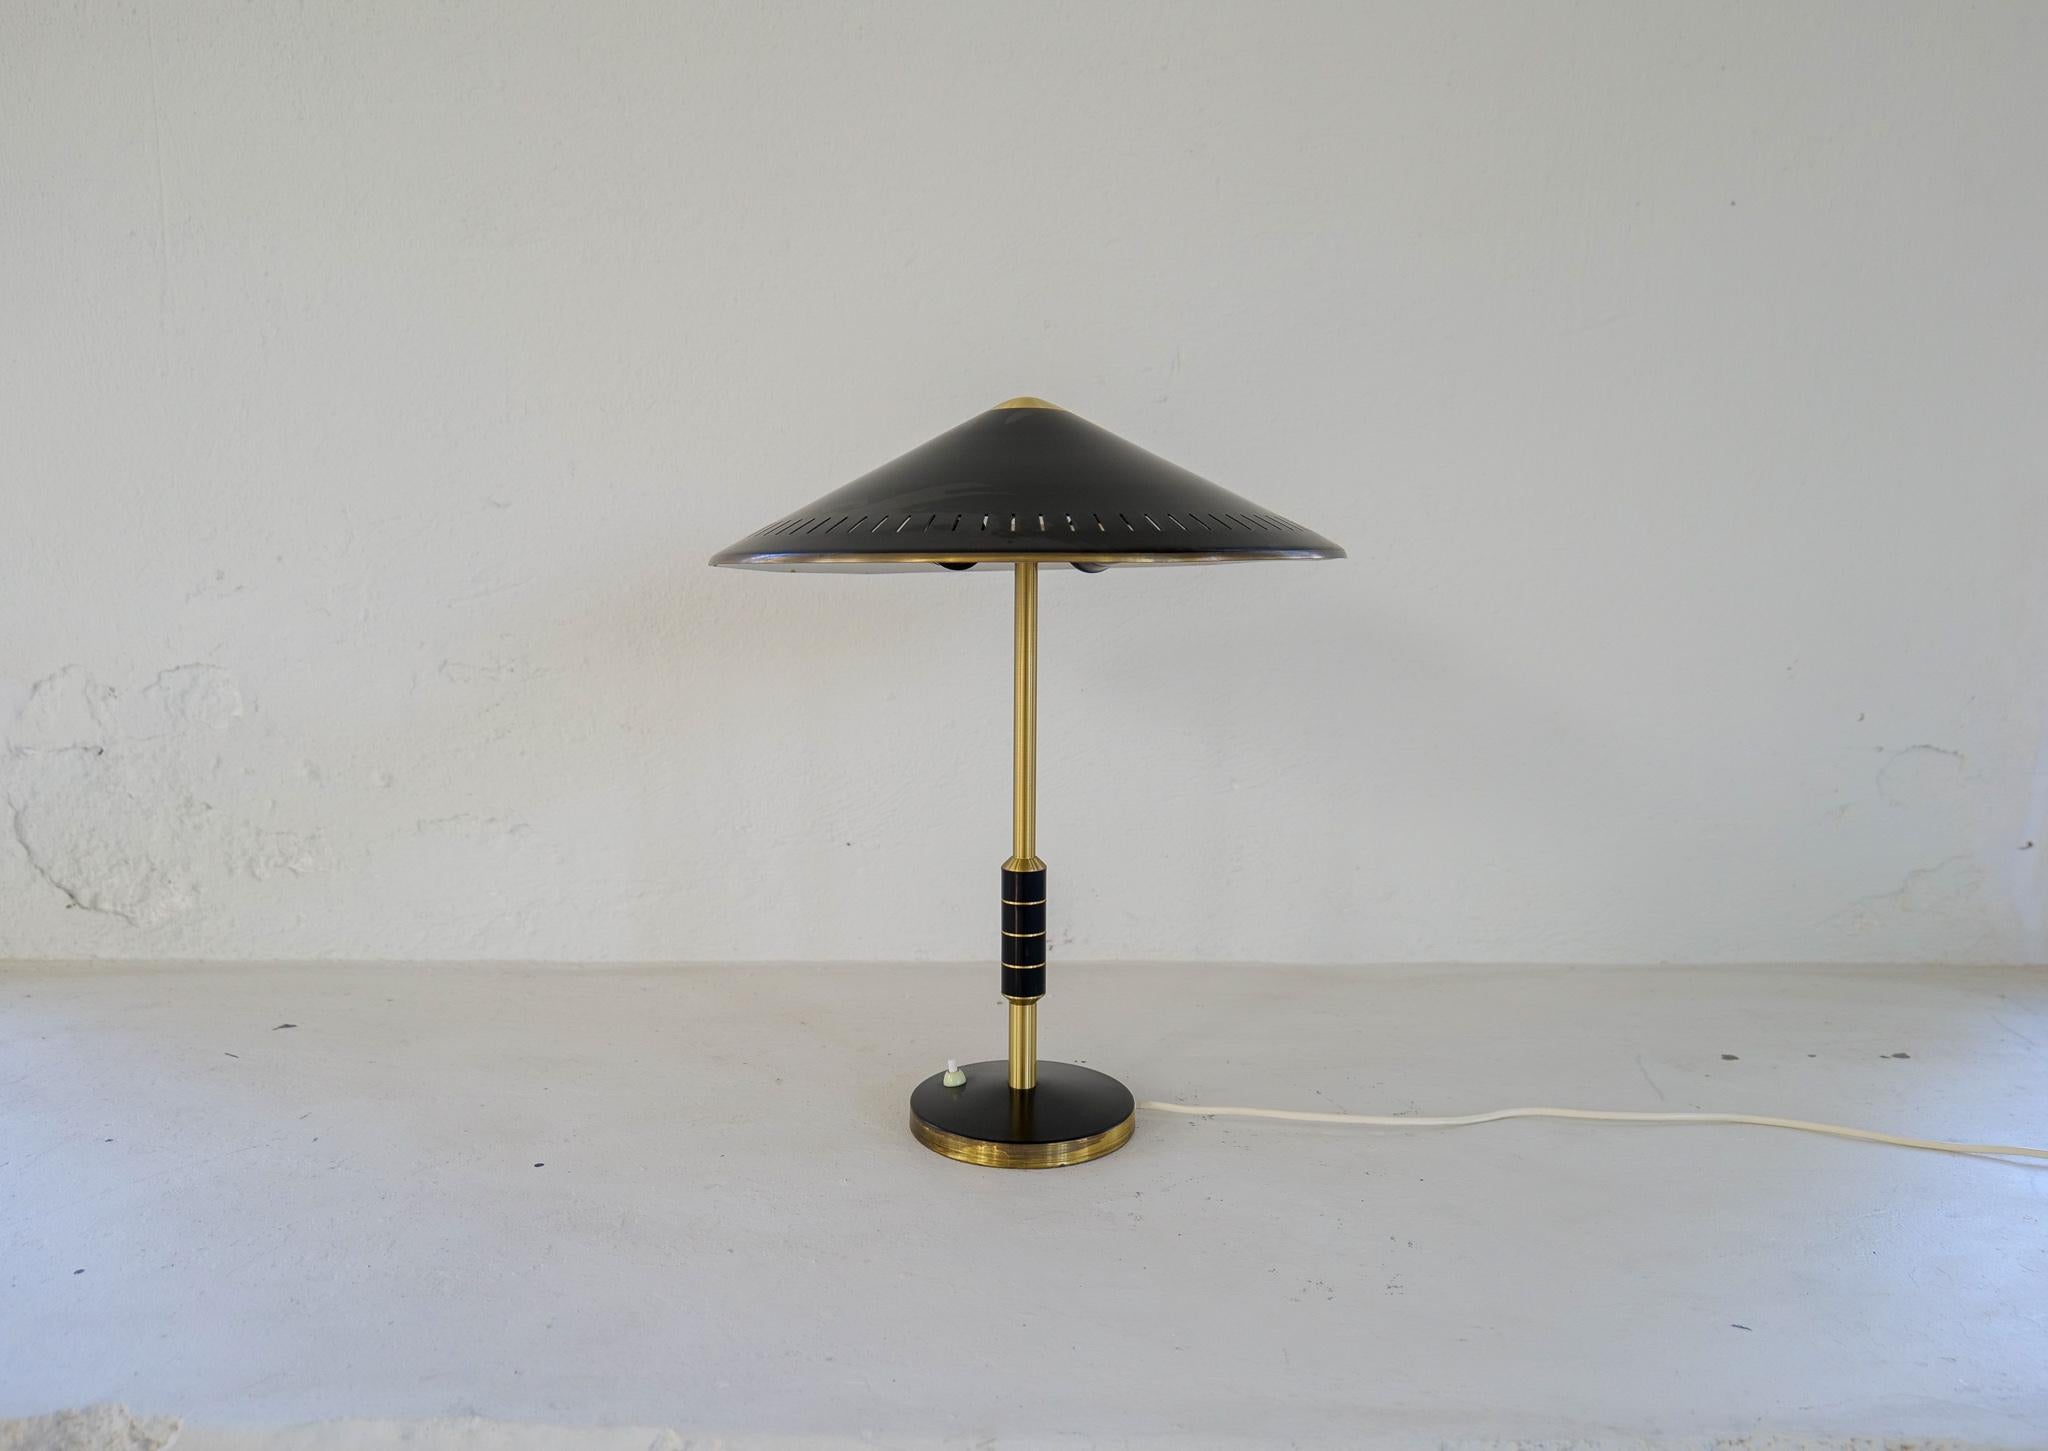 Lampe de table danoise en laiton du milieu du siècle, provenant de Lyfa et conçue par Bent Karlby 1956 Danemark. 
Ce mode noir assez rare B146 en laiton massif avec sources à deux lumières, tige décorée d'un cerclage en métal noir.

Bon état